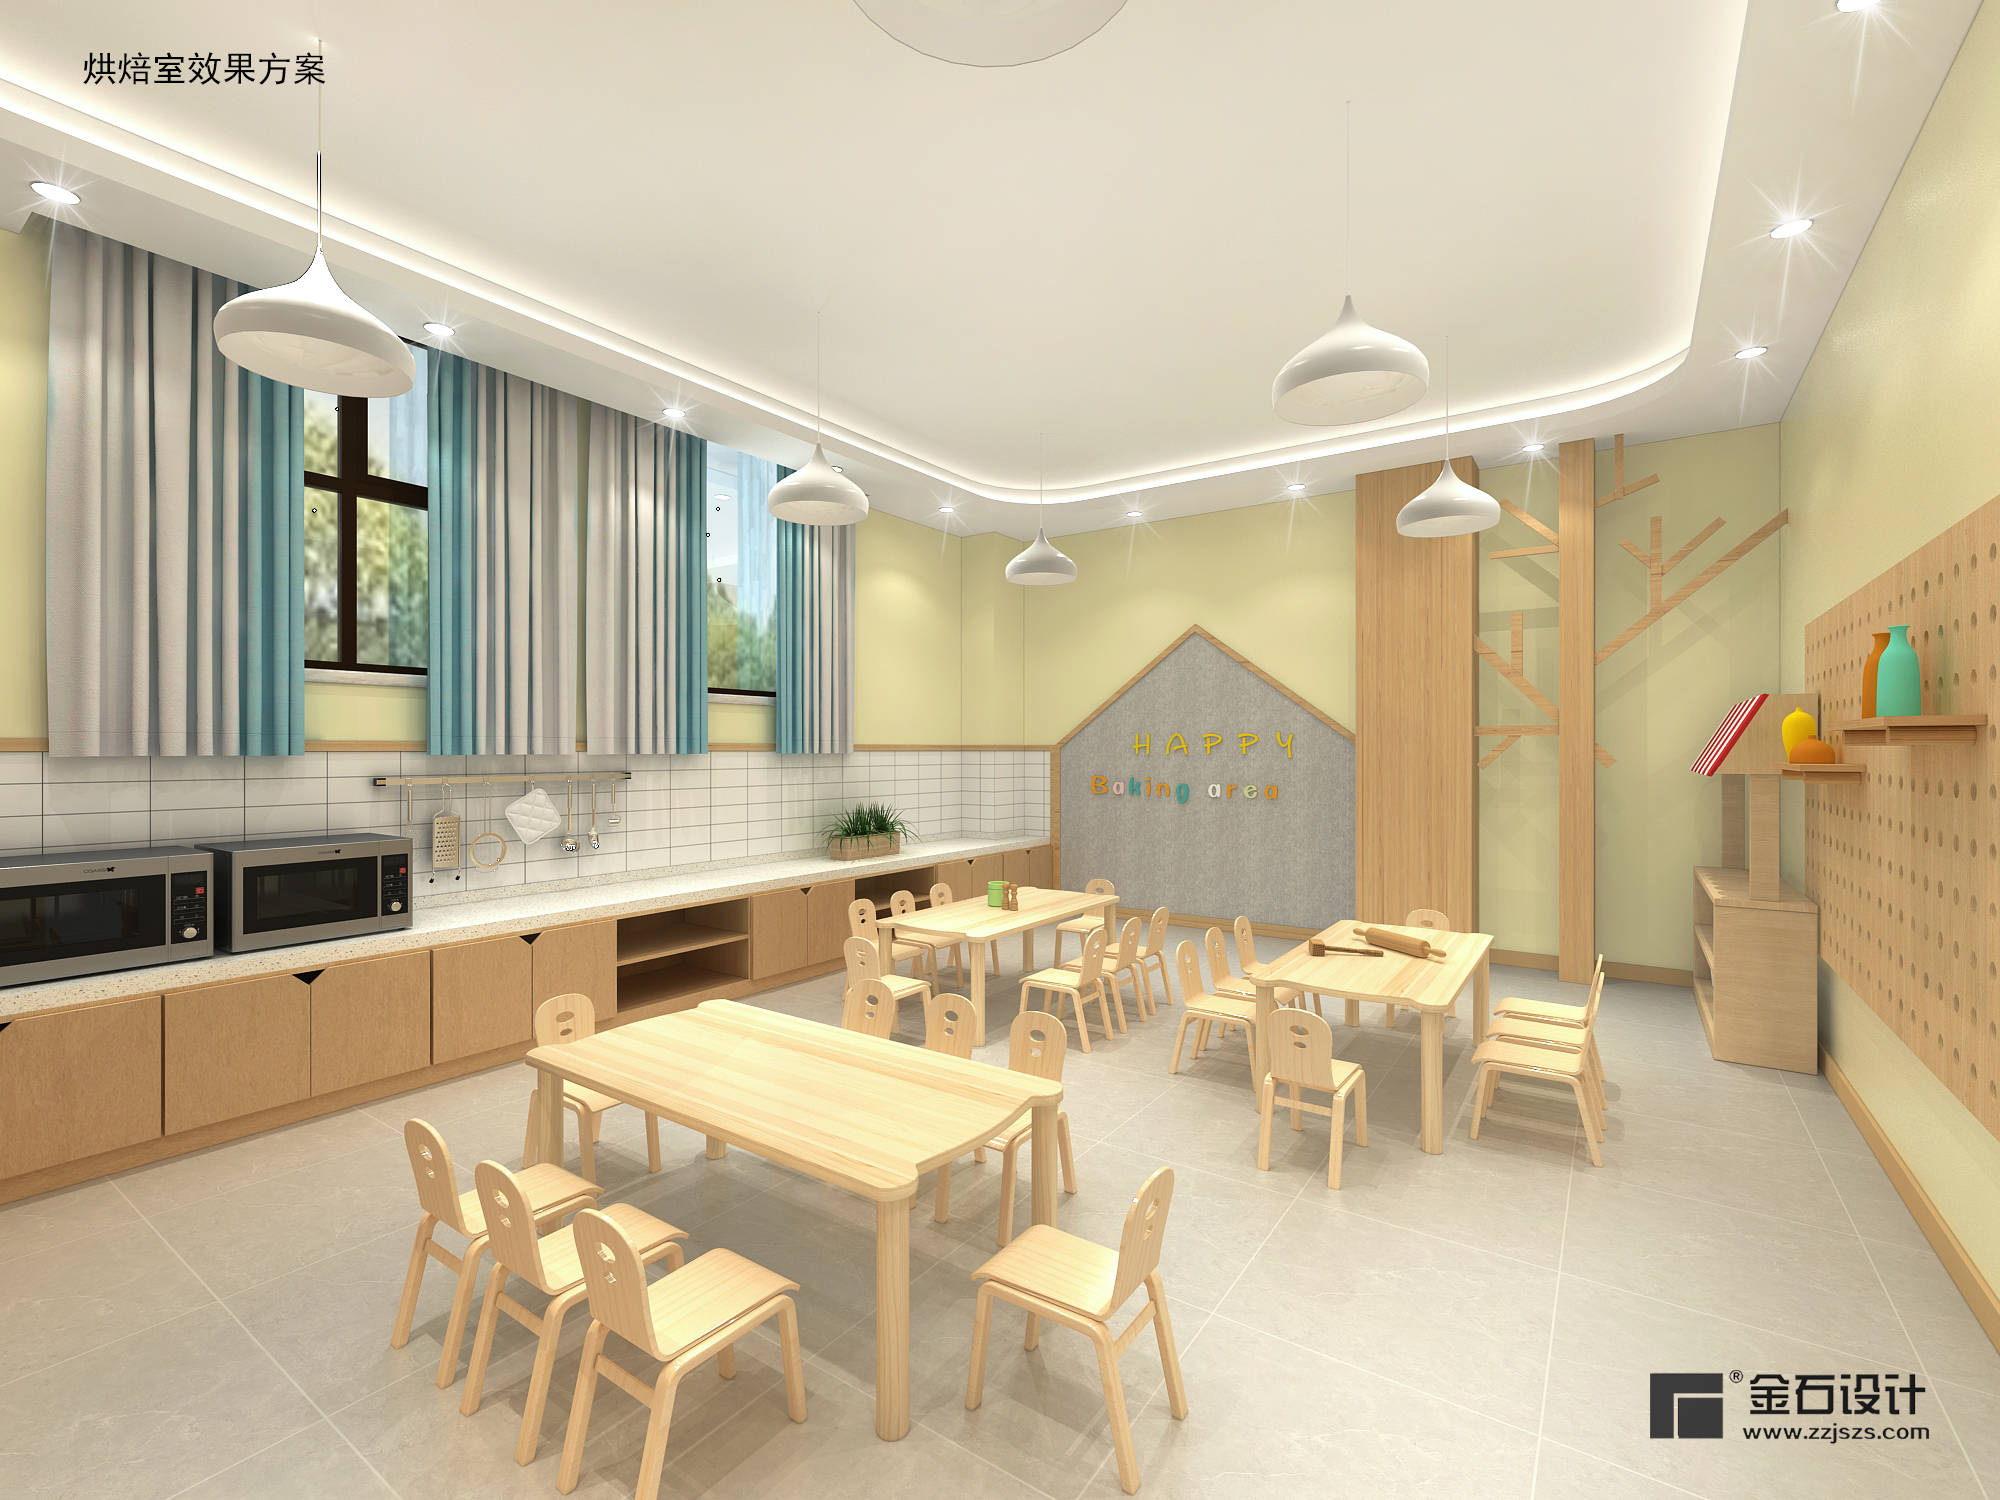 幼儿园设计中色彩的搭配要根据空间功能性进行调整,例如,在活动教室的